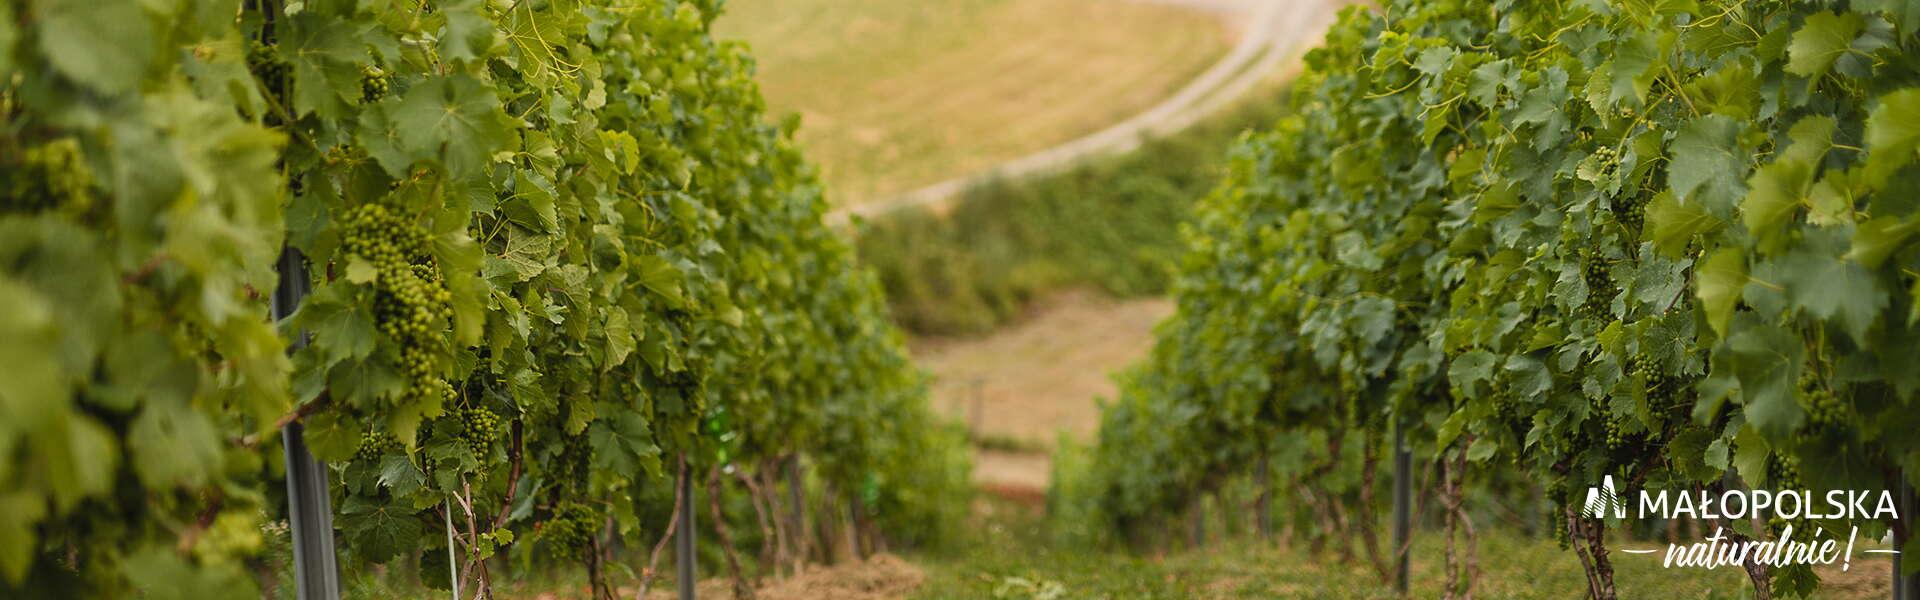 Aleja w winnicy - po obu stronach ścieżki krzewy winorośli z zielonymi owocami, w prawym dolnym rogu logo - napis Małopolska naturalnie